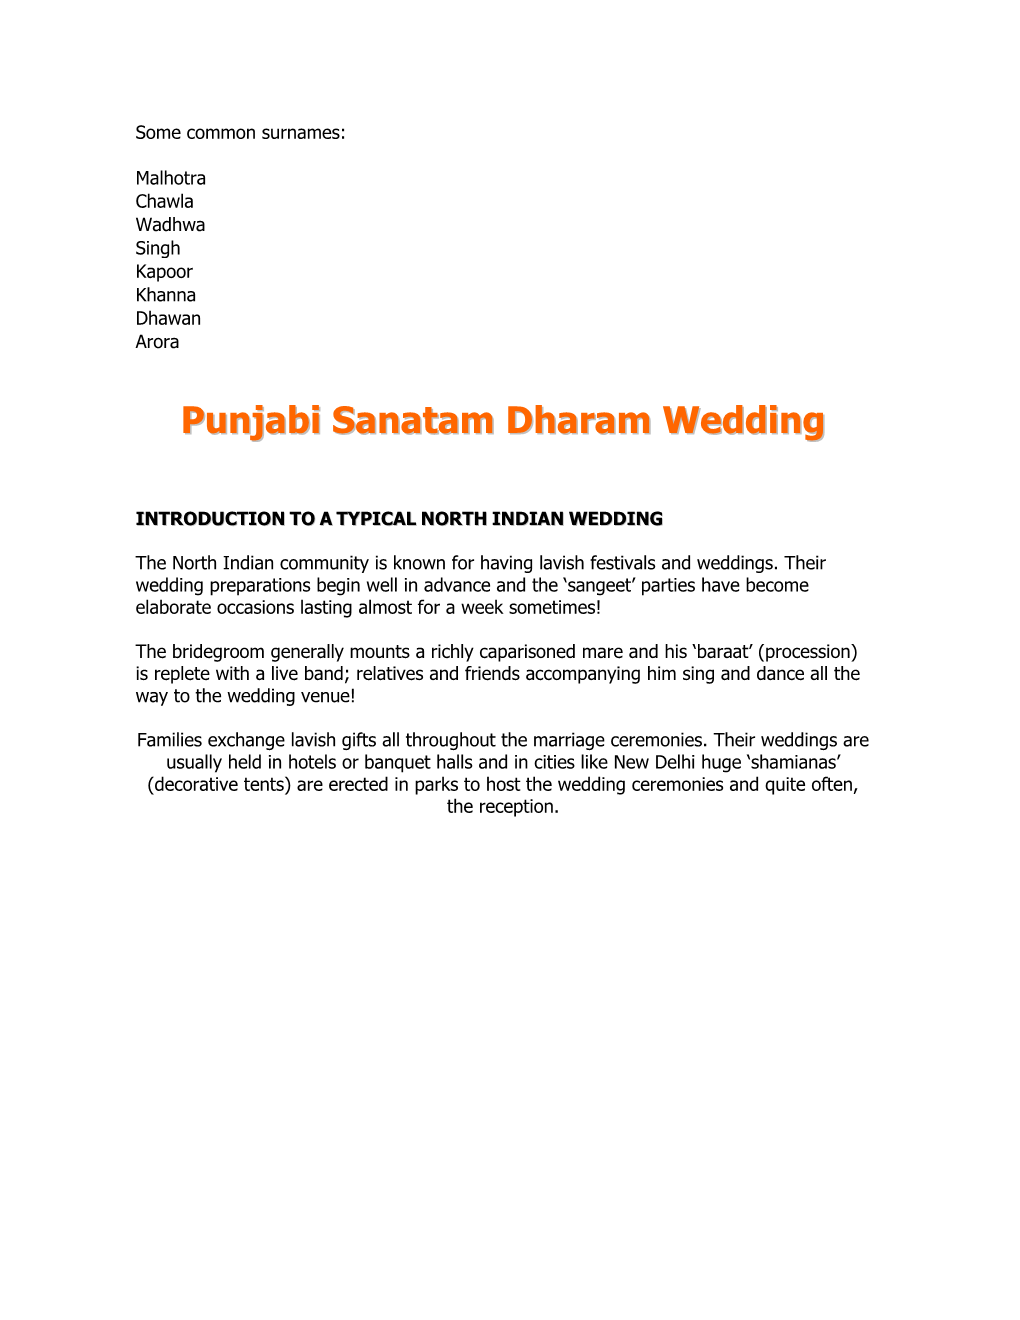 Punjabi Sanatam Dharam Wedding